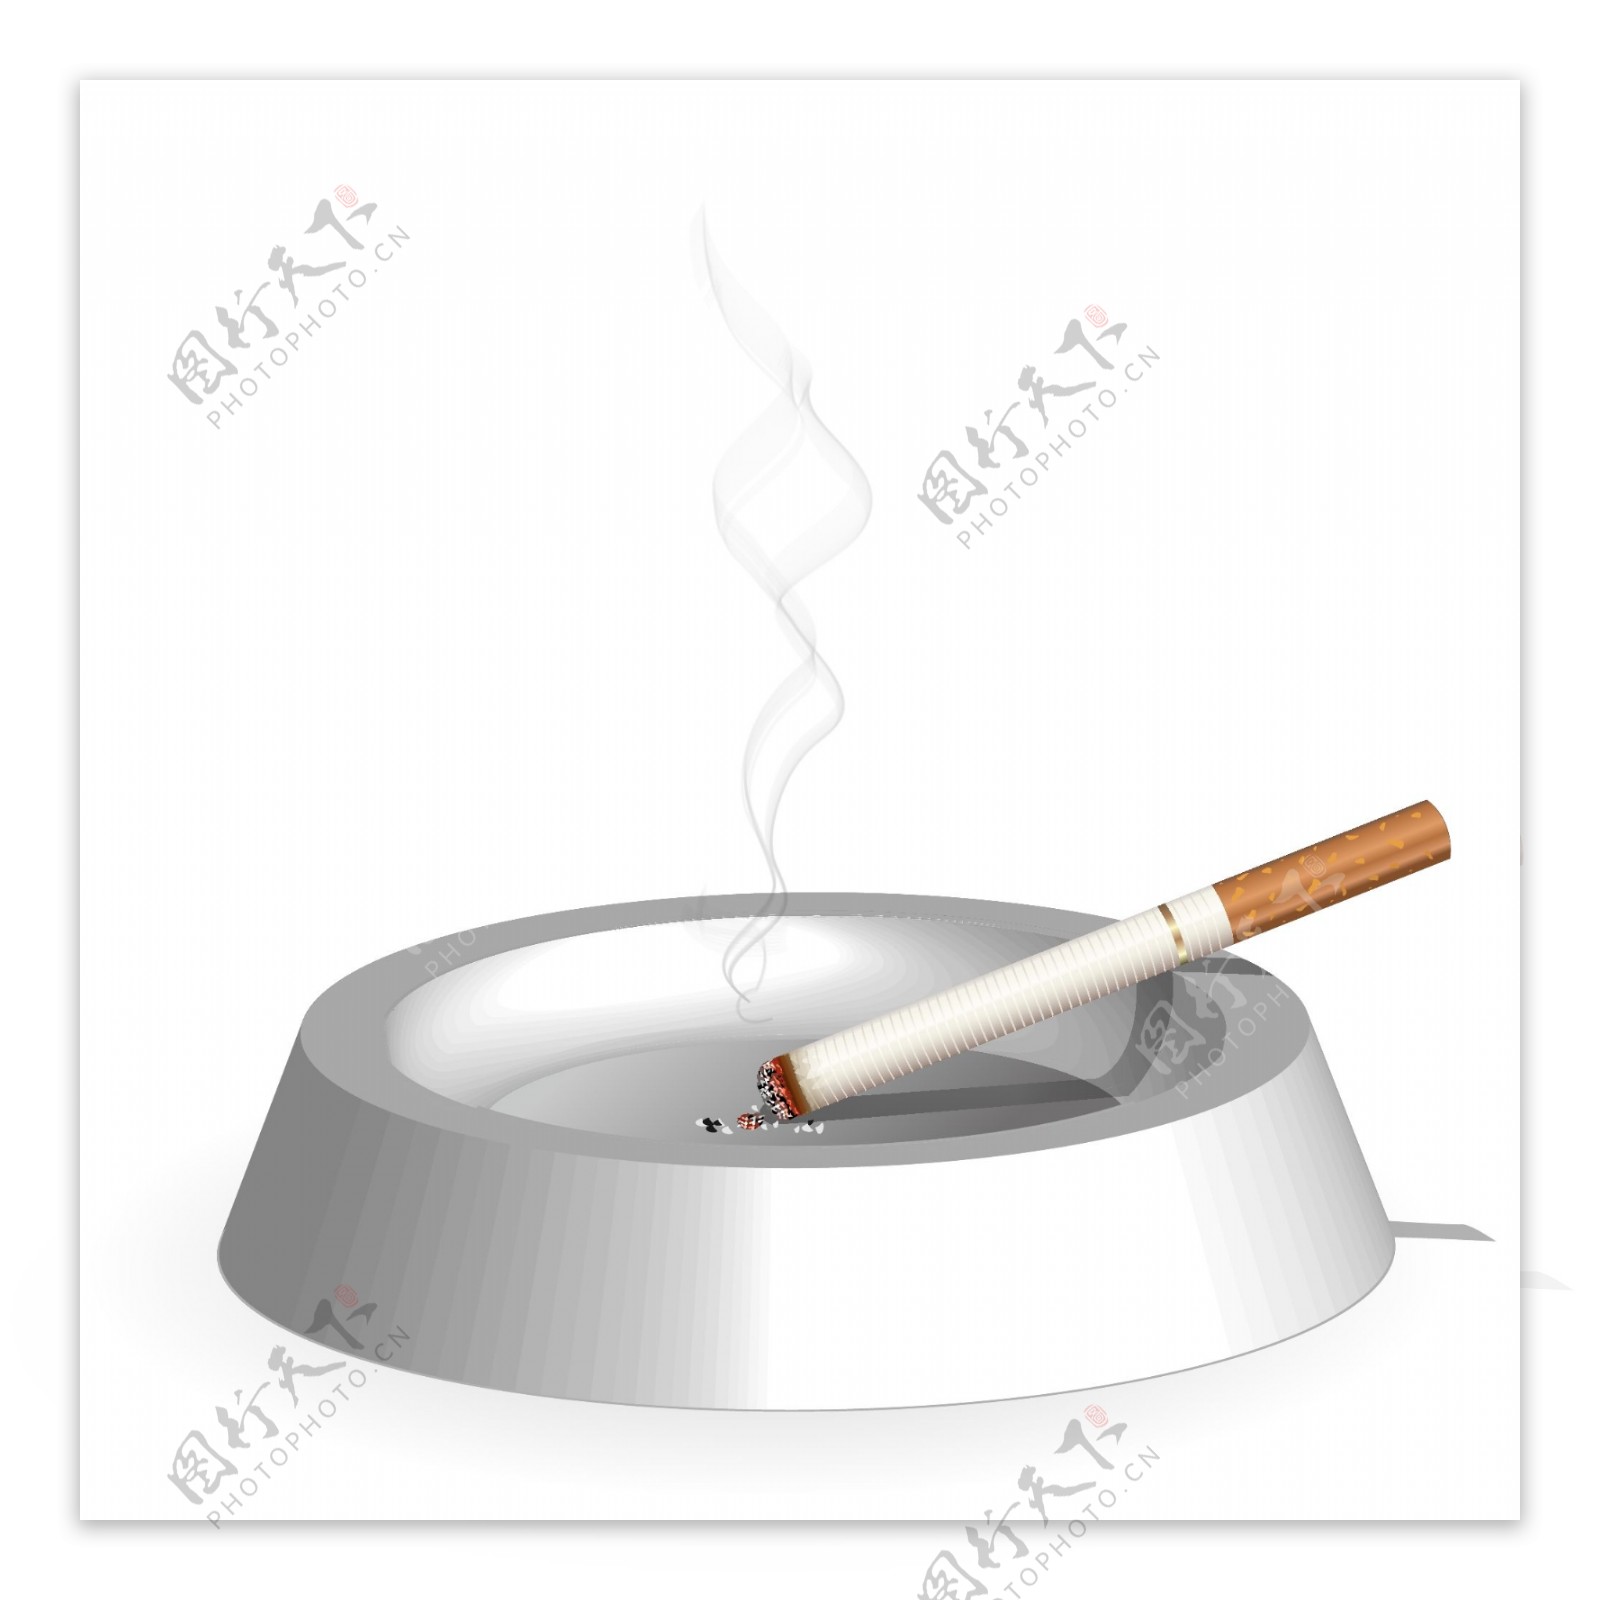 烟灰缸里的烟